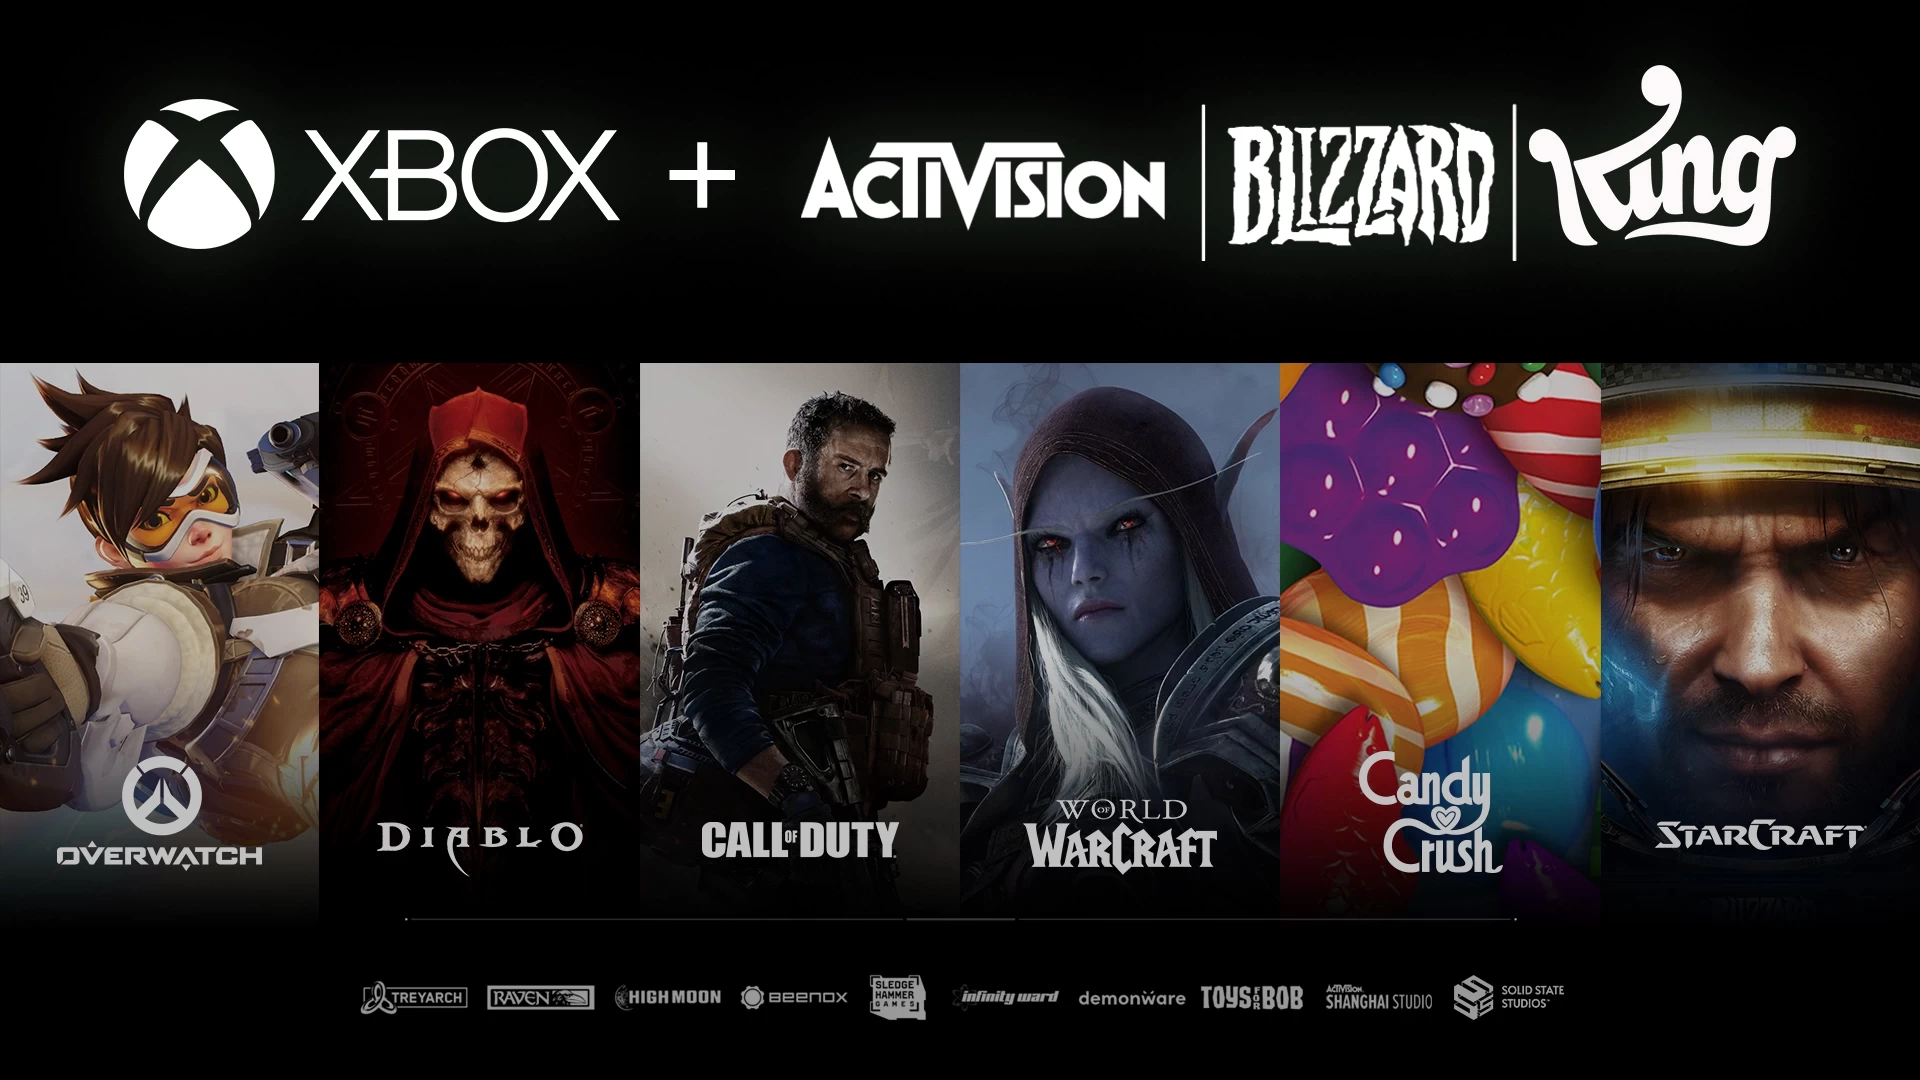 صورة الأخبار :: عاجل: المفوضية الأوروبية توافق على استحواذ Xbox على Activision!